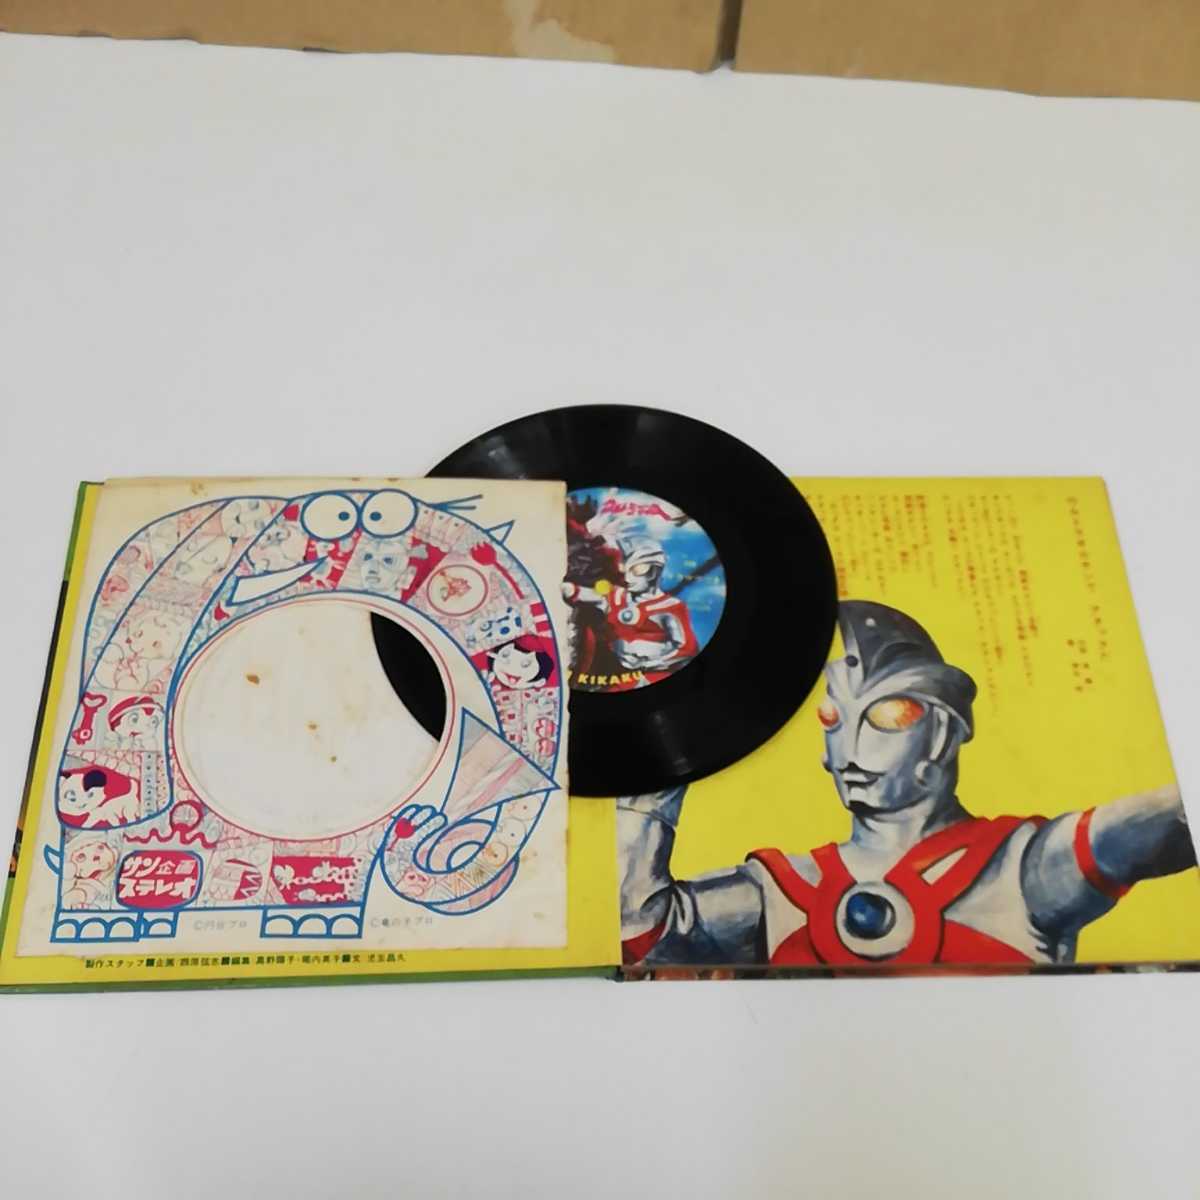 1_V EP attack action Ultraman A солнечный план. роскошный запись версия загрязнения есть царапина большое количество есть Ultraman Ace иен . Pro книга с картинками 